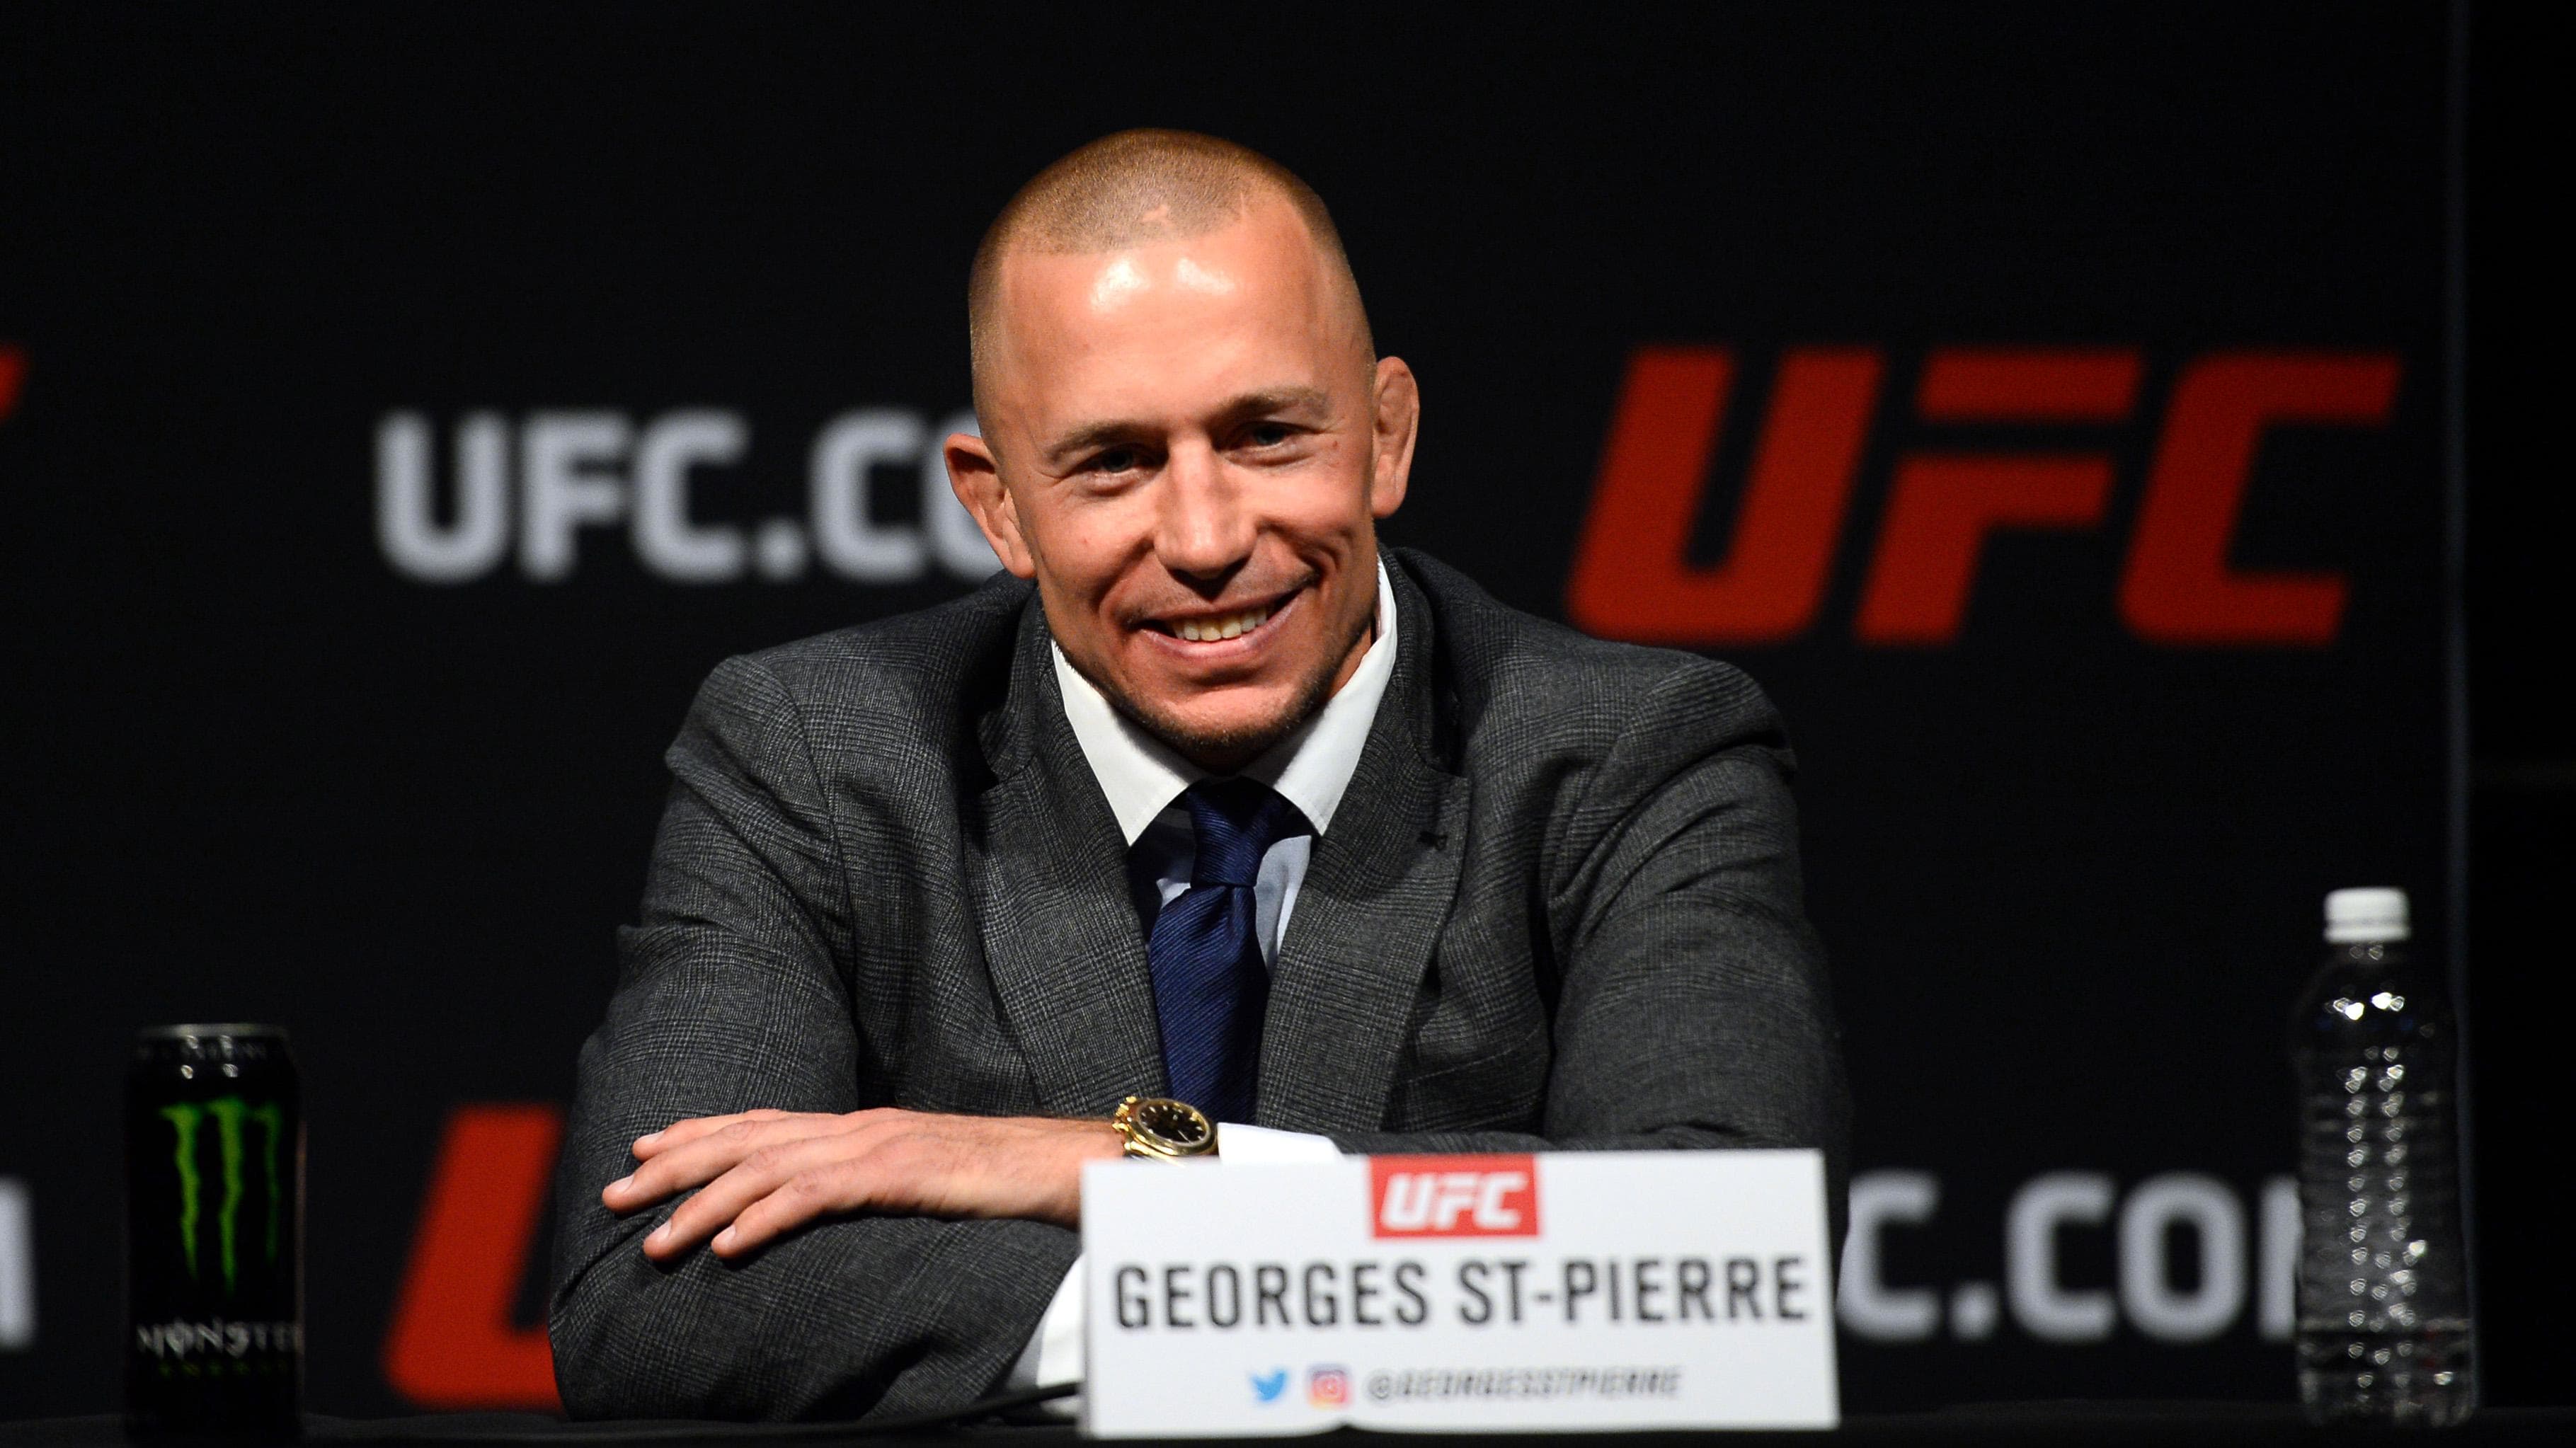 La légende de l’UFC Georges St-Pierre rappelle l’offre de combat de Floyd Mayweather